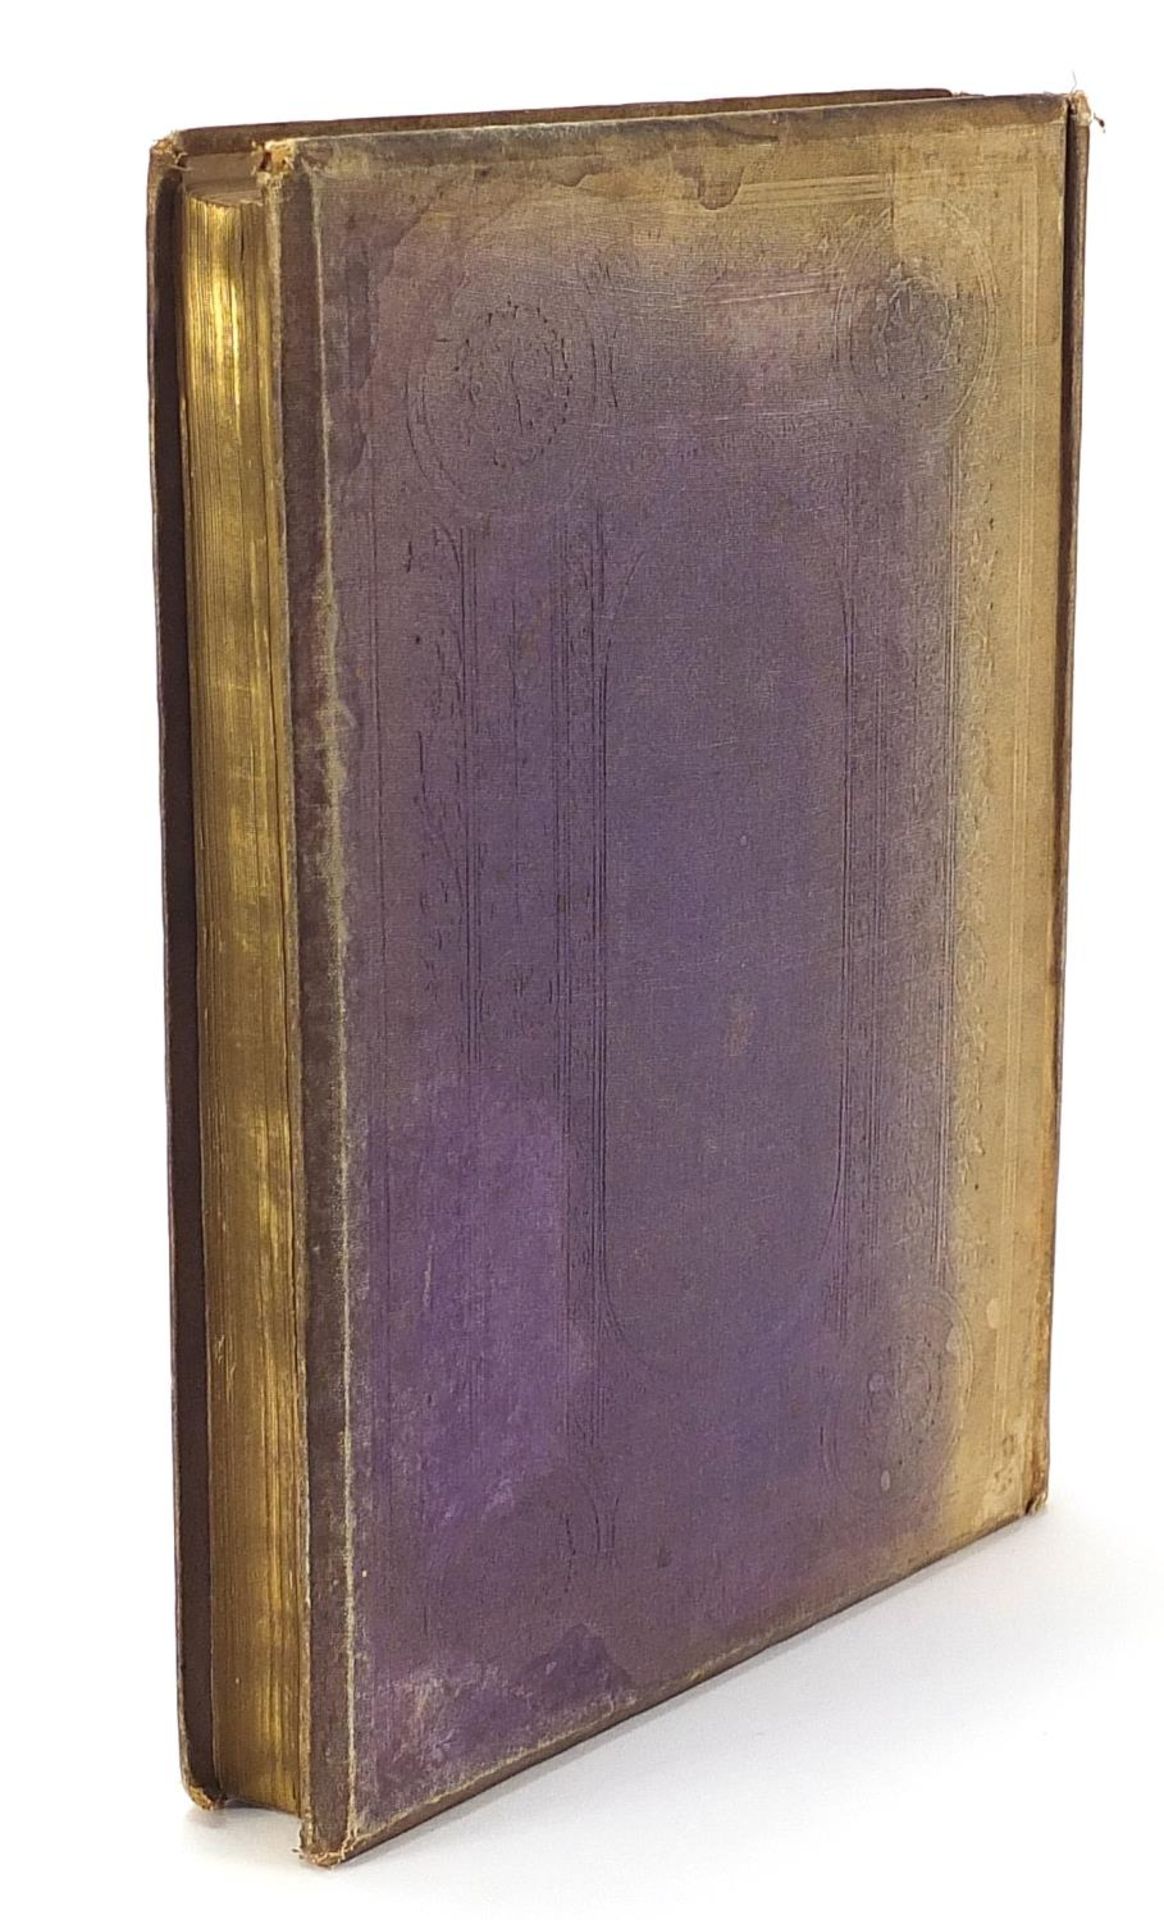 Dalziels Illustrated Goldsmith, Hardback book published Ward & Lock 1865 - Image 3 of 3